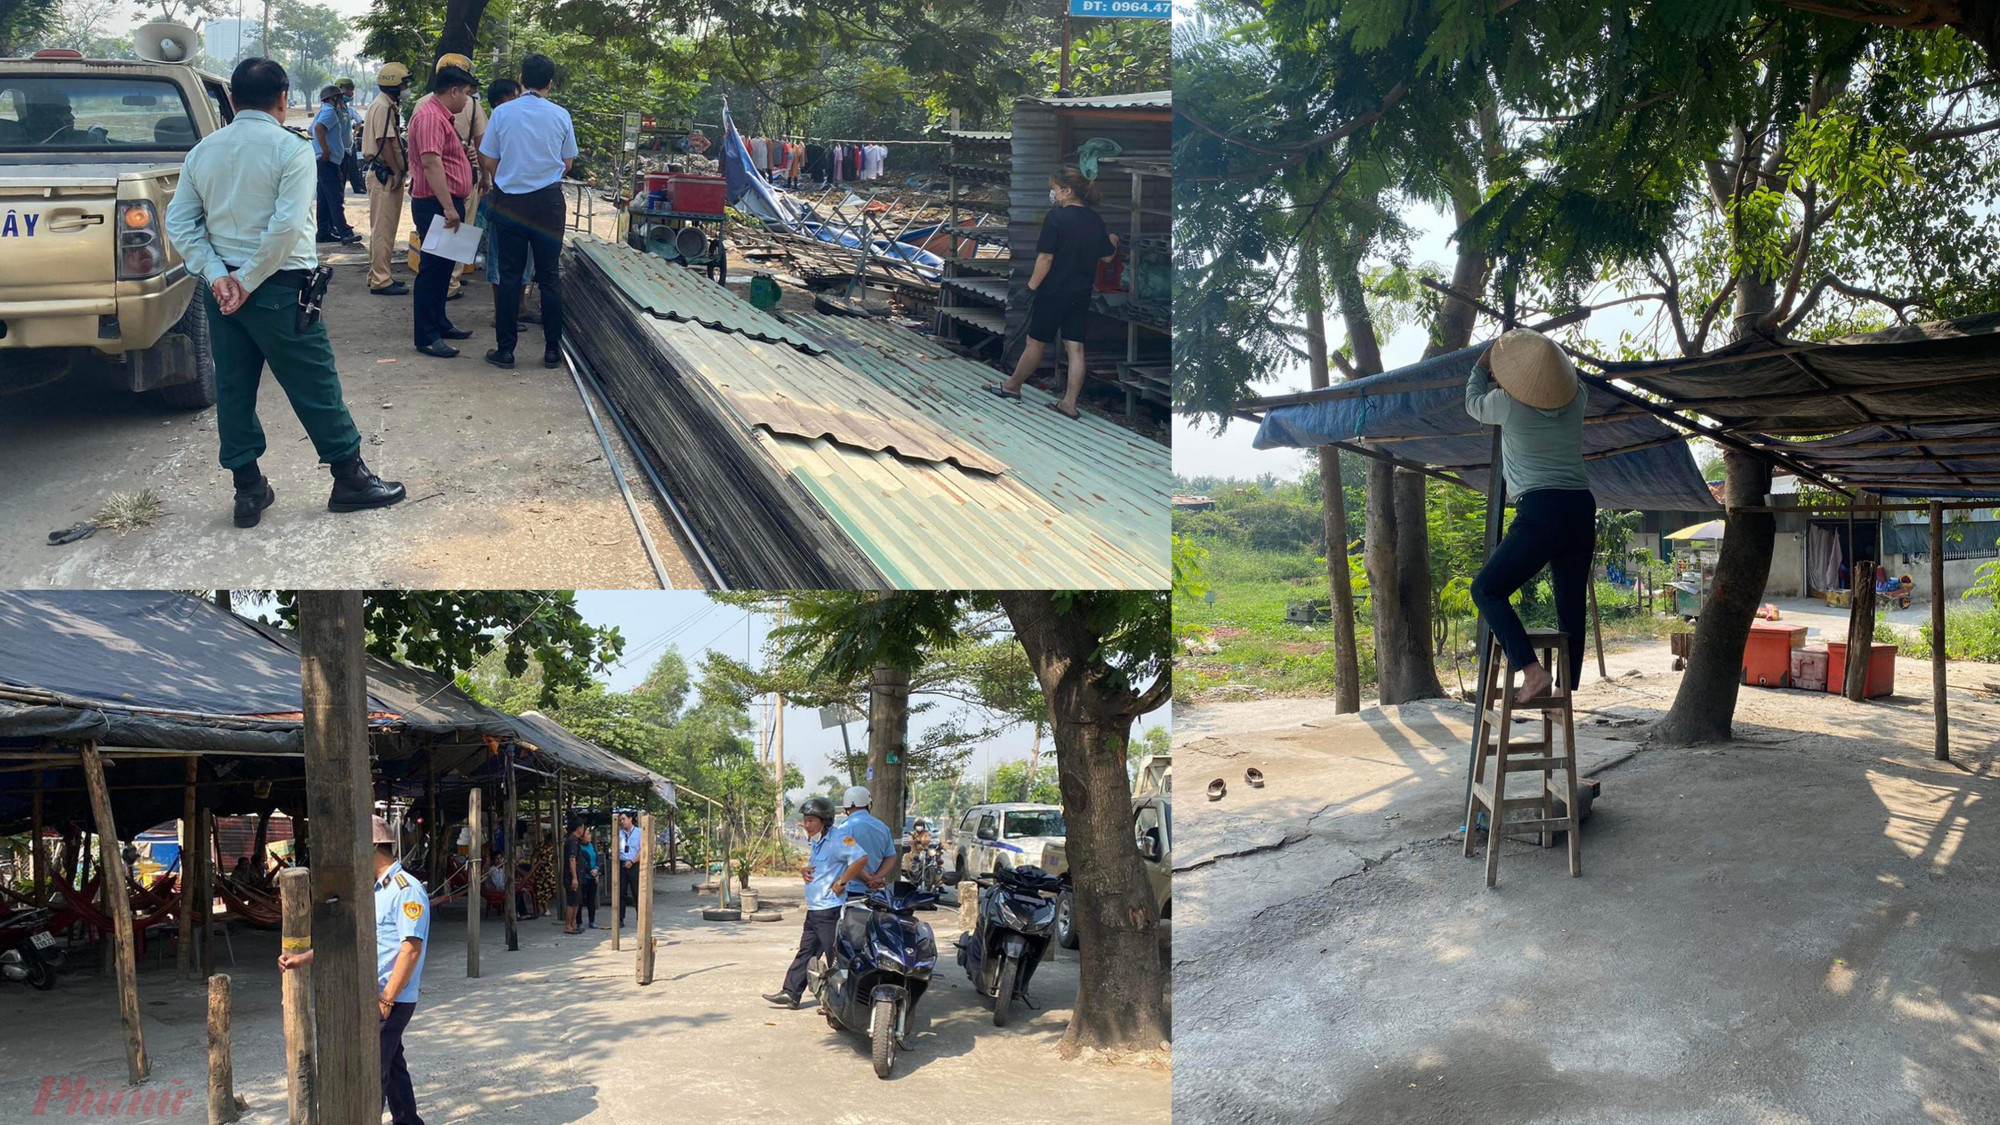 Từ các cuộc vận động tuyên truyền, nhiều người dân đã đồng thuận tháo dỡ các công trình sai phép lấn chiếm  anh đất đã thu hồi được bồi thường dọc tuyến đường Nguyễn Văn Linh